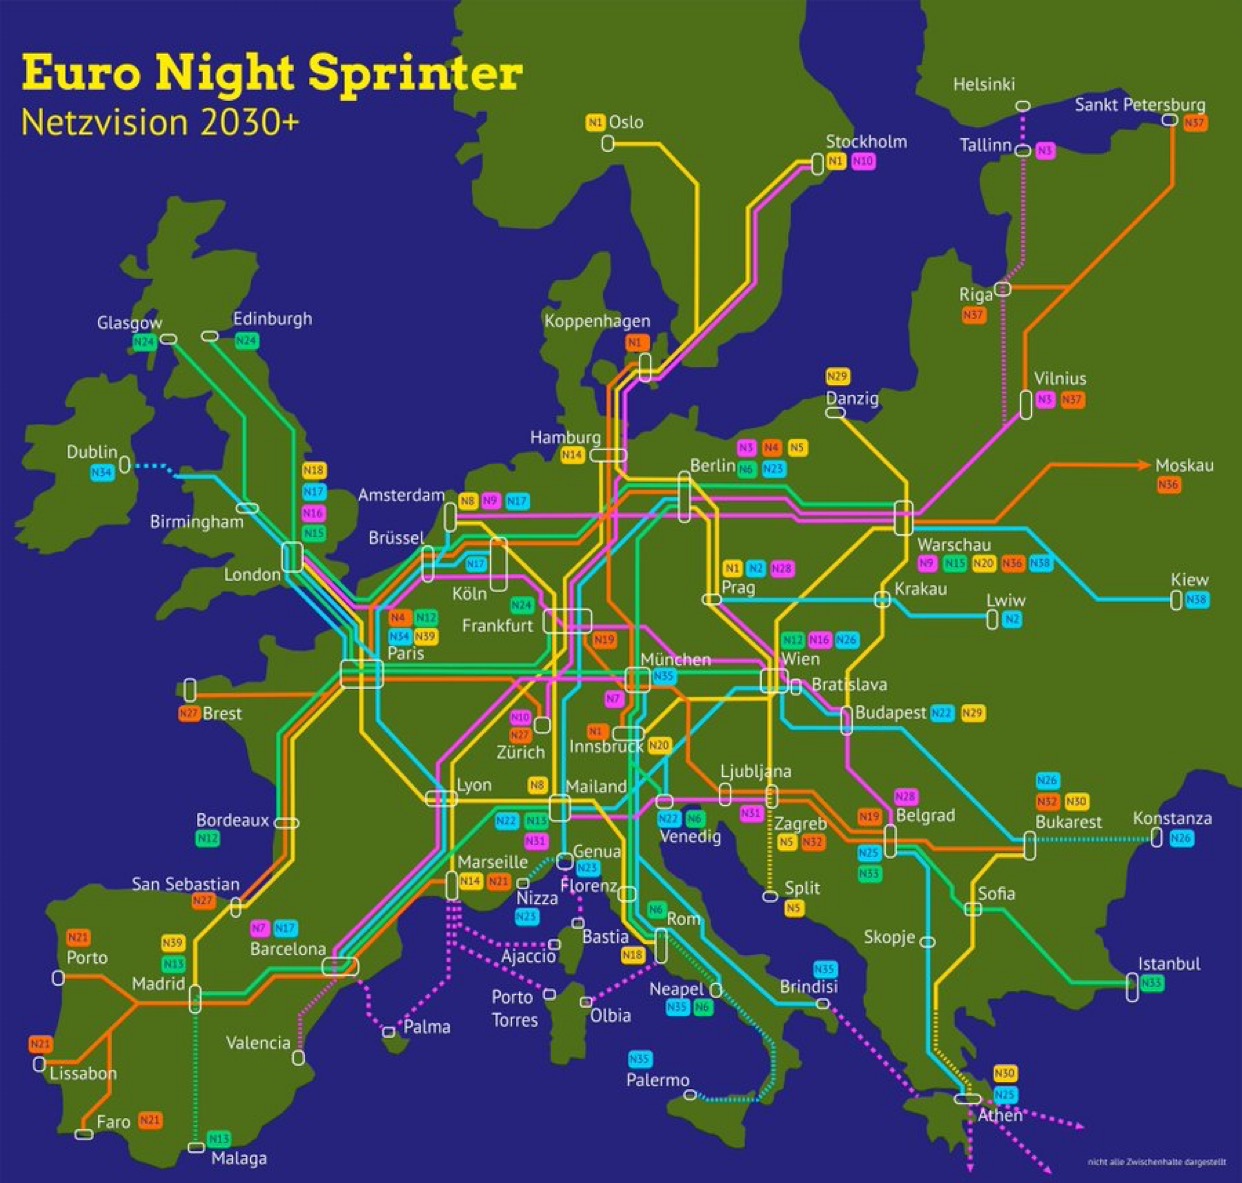 Euro Night Sprinter 2030 Vision 